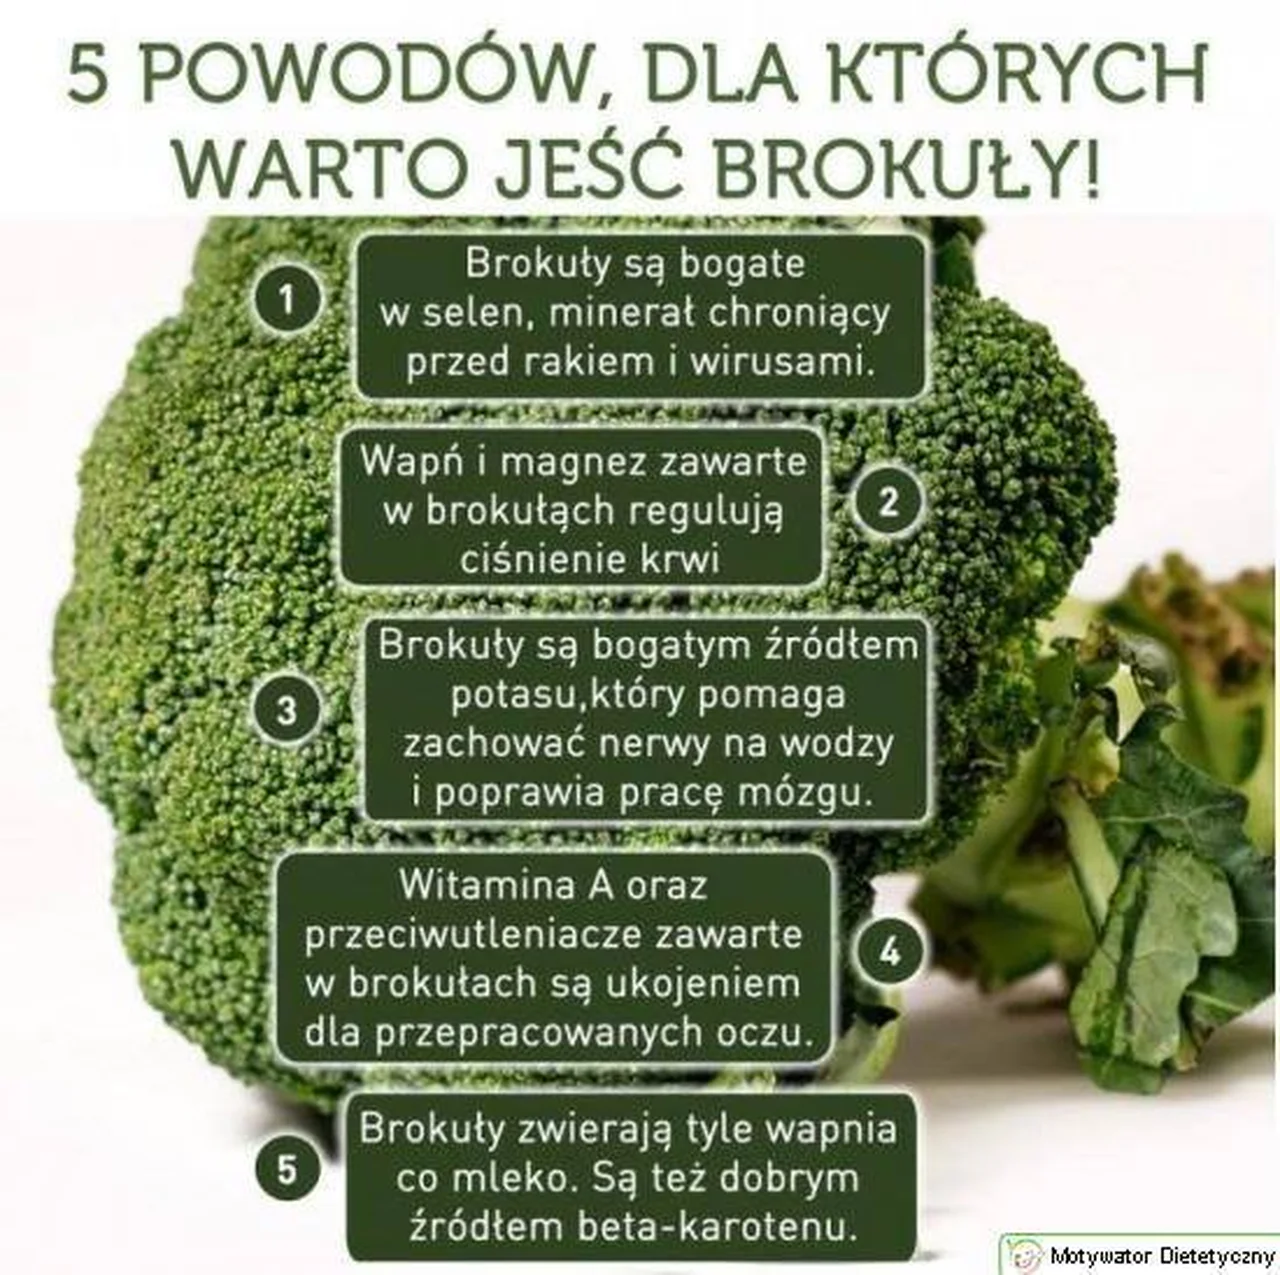 Dlaczego warto jeść brokuły